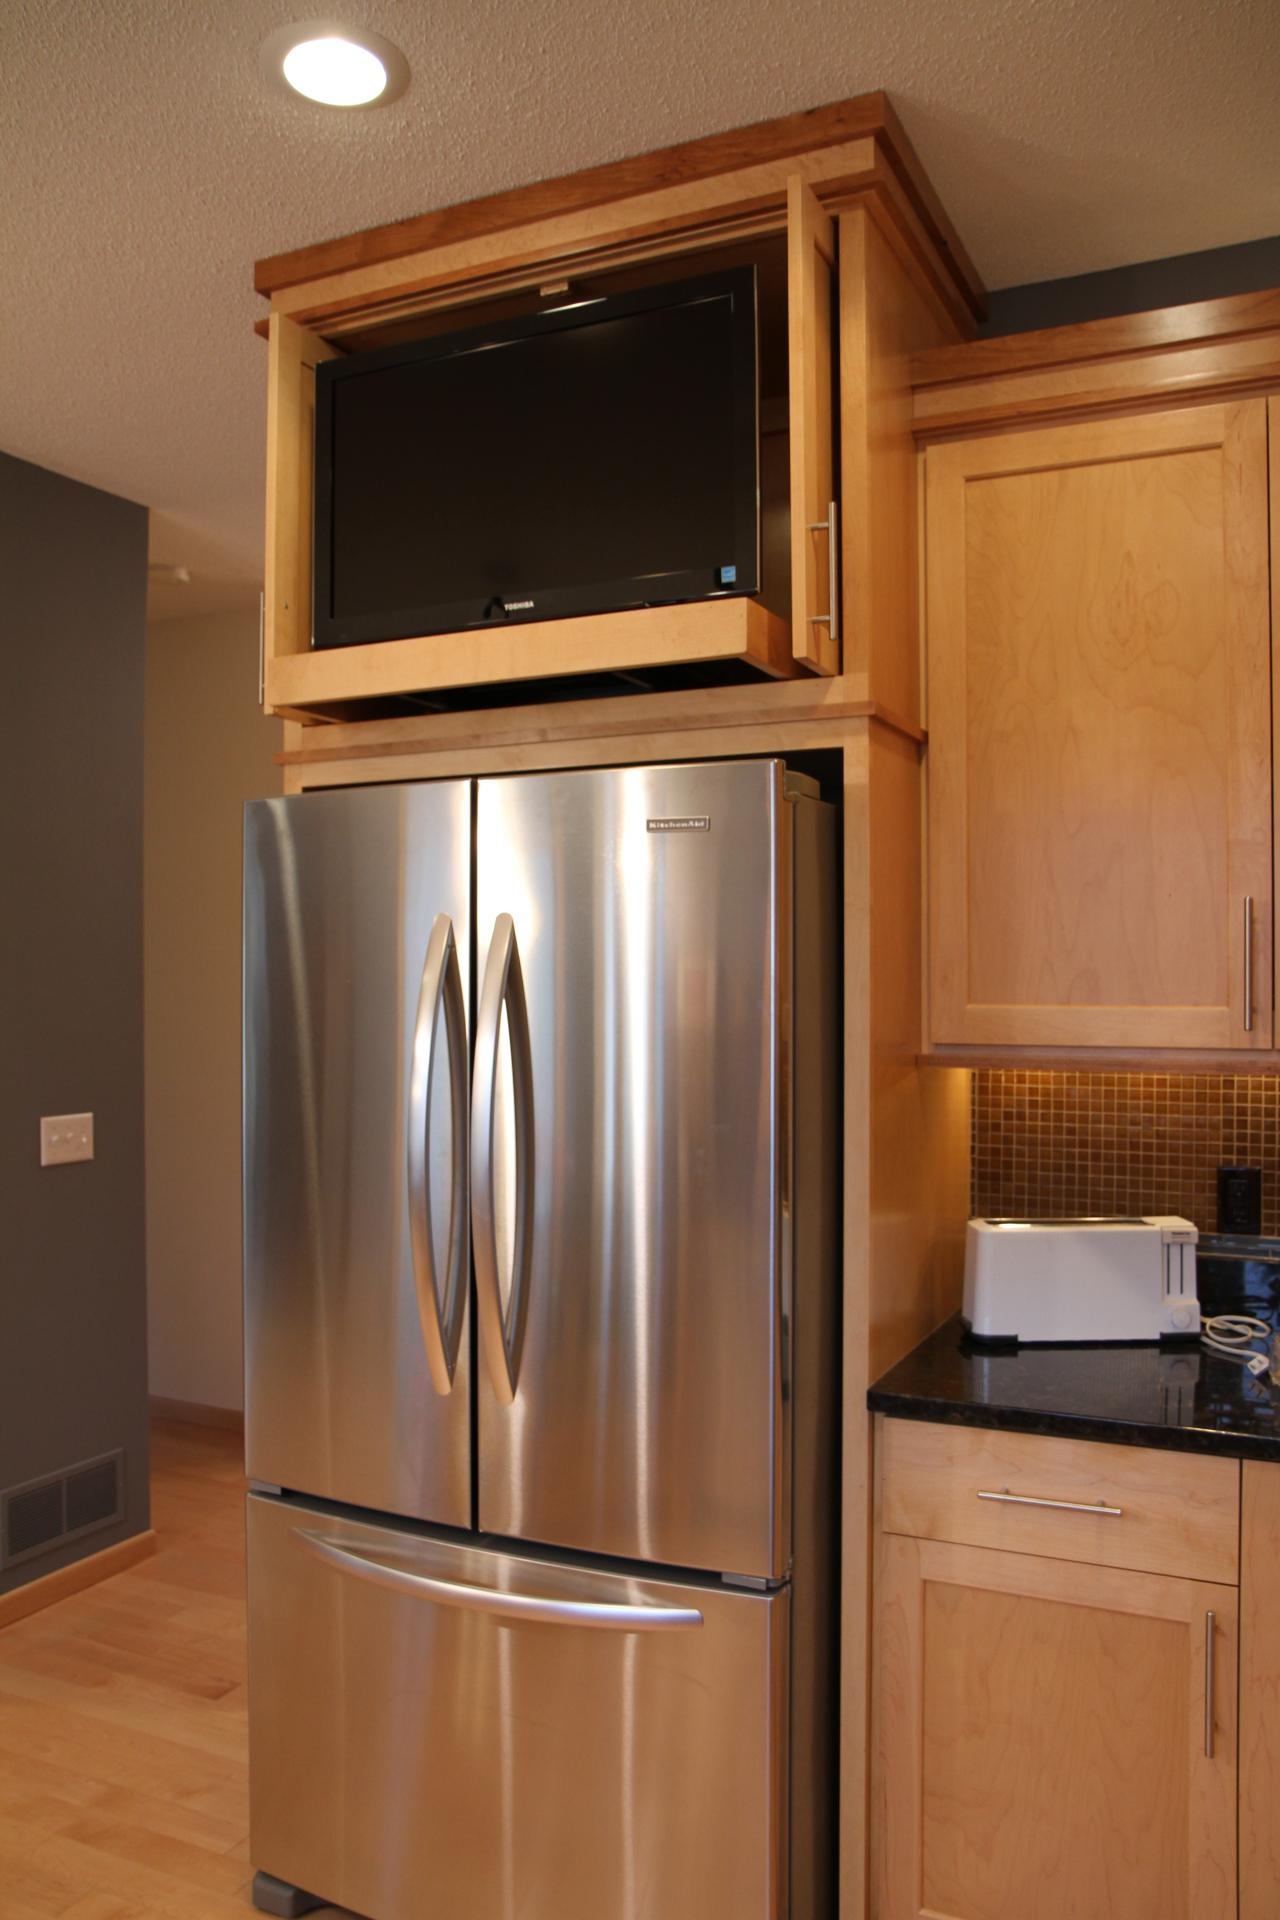 Можно ли ставить микроволновку на холодильник сверху. Телевизор над холодильником на кухне. Кухня с большим холодильником. Кухонный шкафчик над холодильником. Холодильник в интерьере кухни.